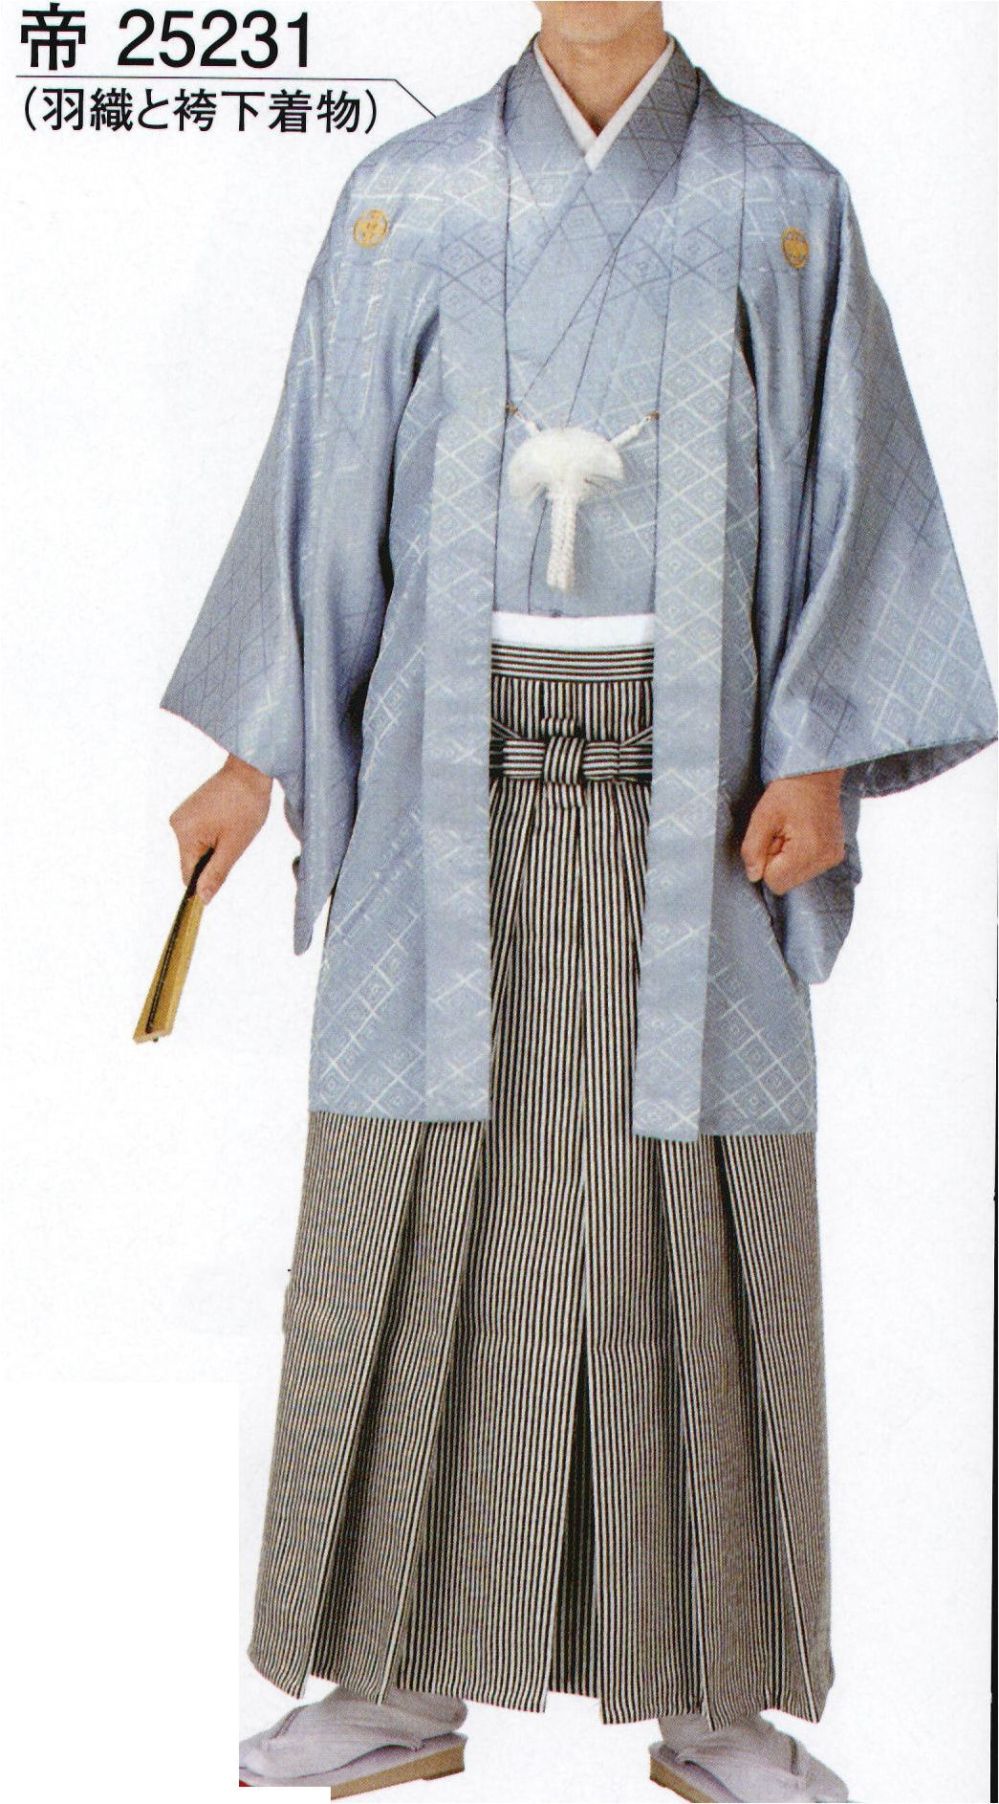 袴下用帯 和装着付用品 神官衣装用 通販